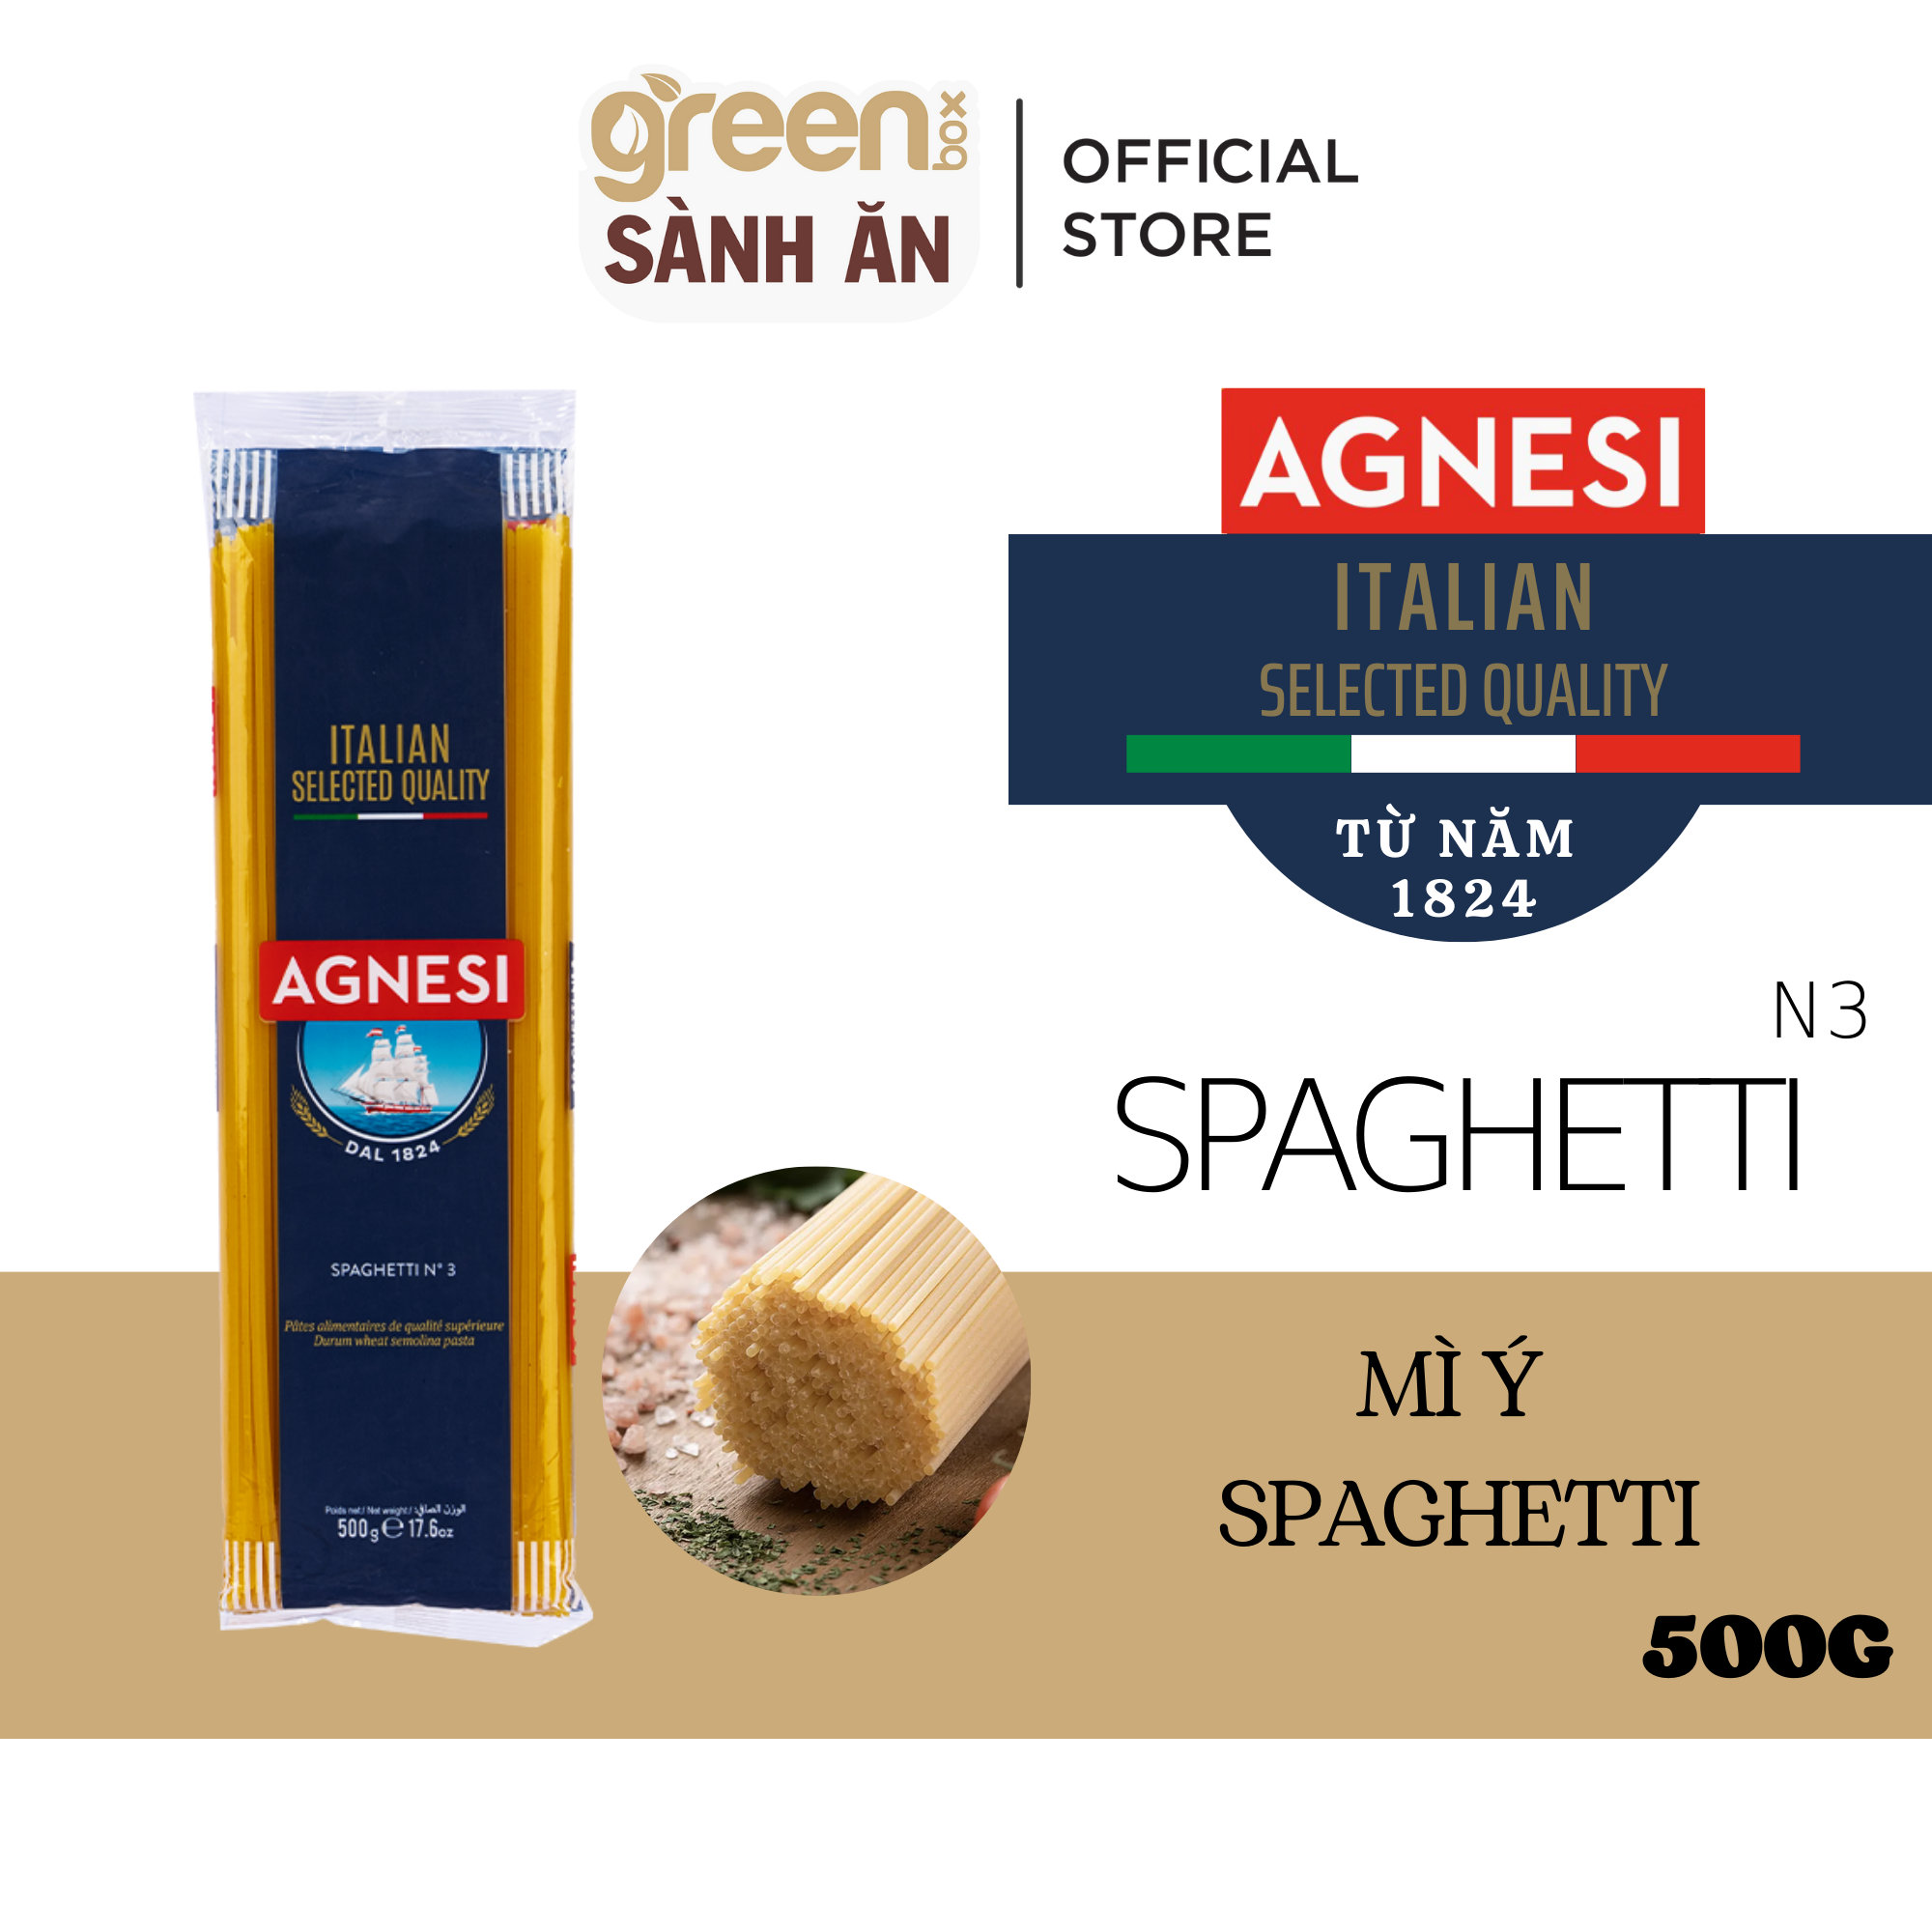 Mì ý sợi to Spaghetti làm từ lúa mì Semolina cao cấp Agnesi Ý 500g nấu